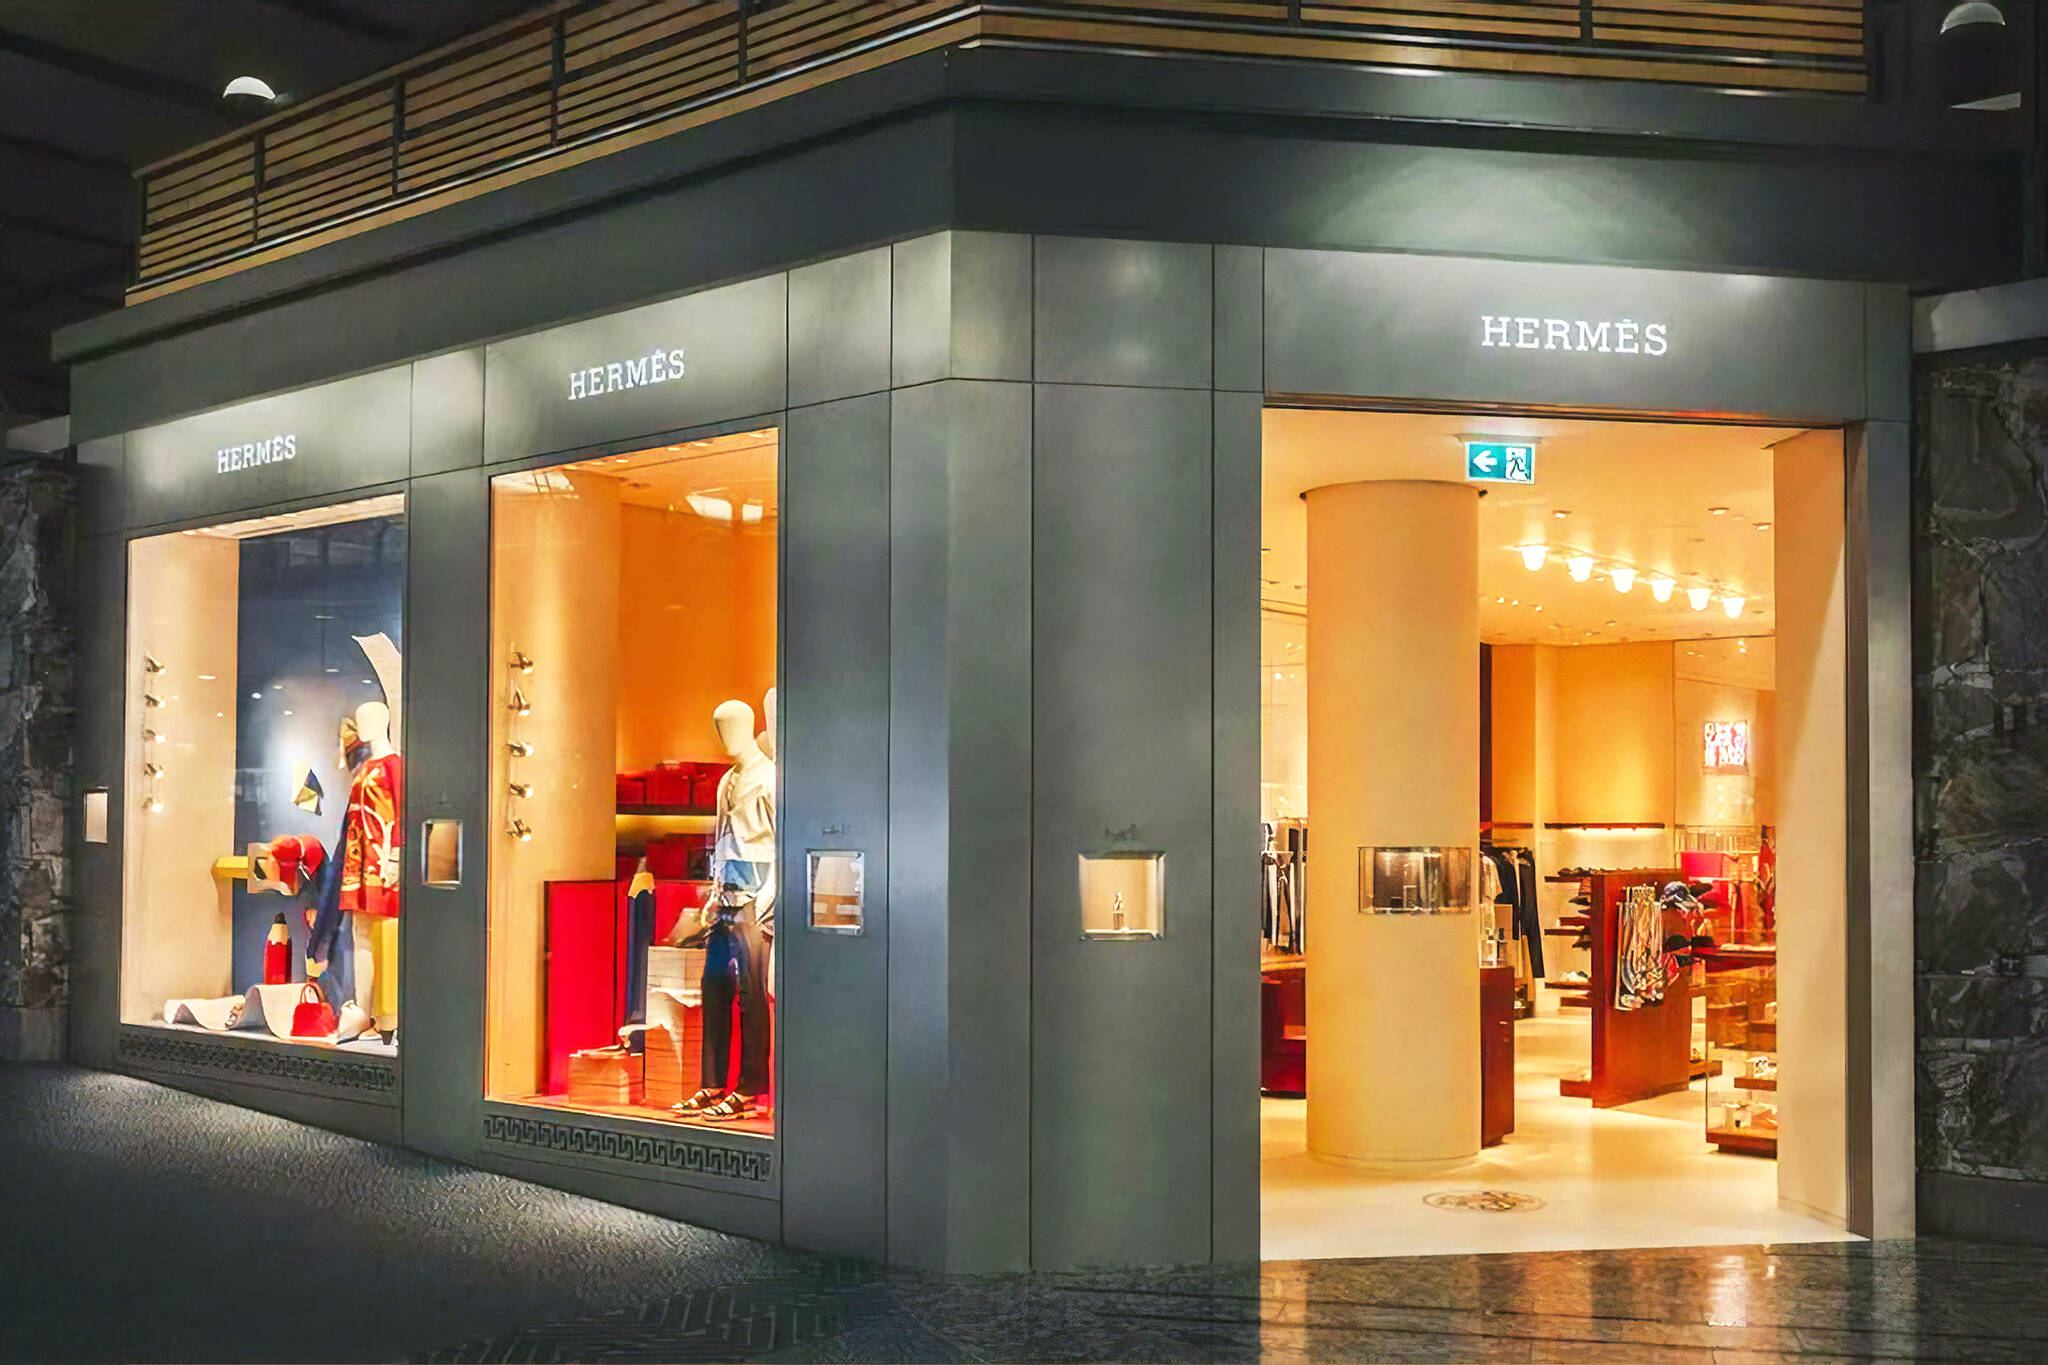 Luxury designer Hermes is having a big sale in Toronto